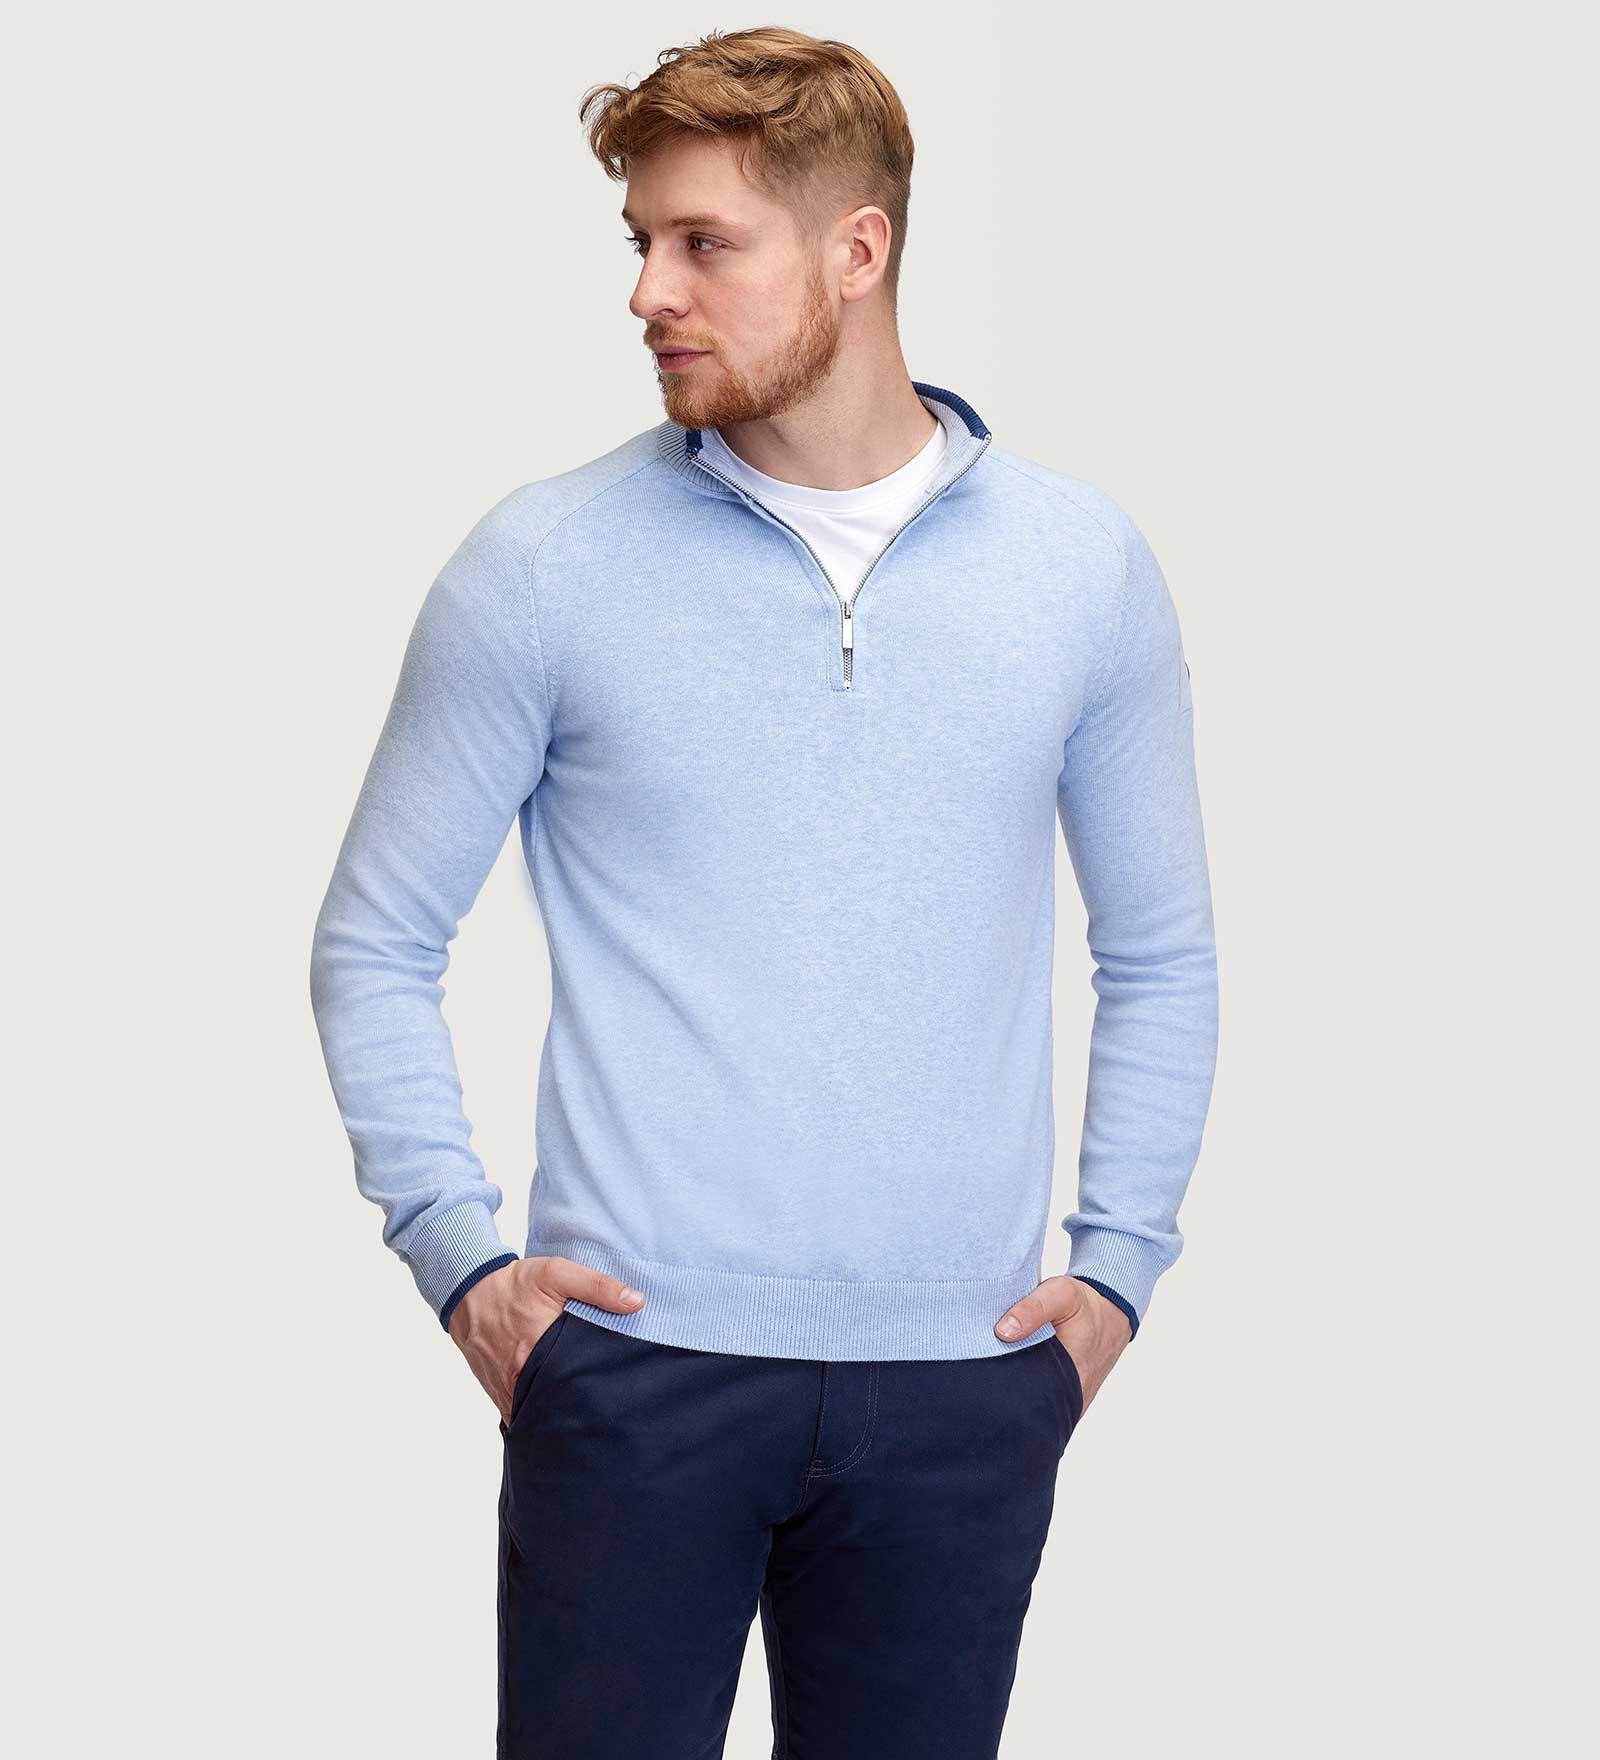 CODE-ZERO Half-Zip Sweater Men Rigging Blue L | CODE-ZERO